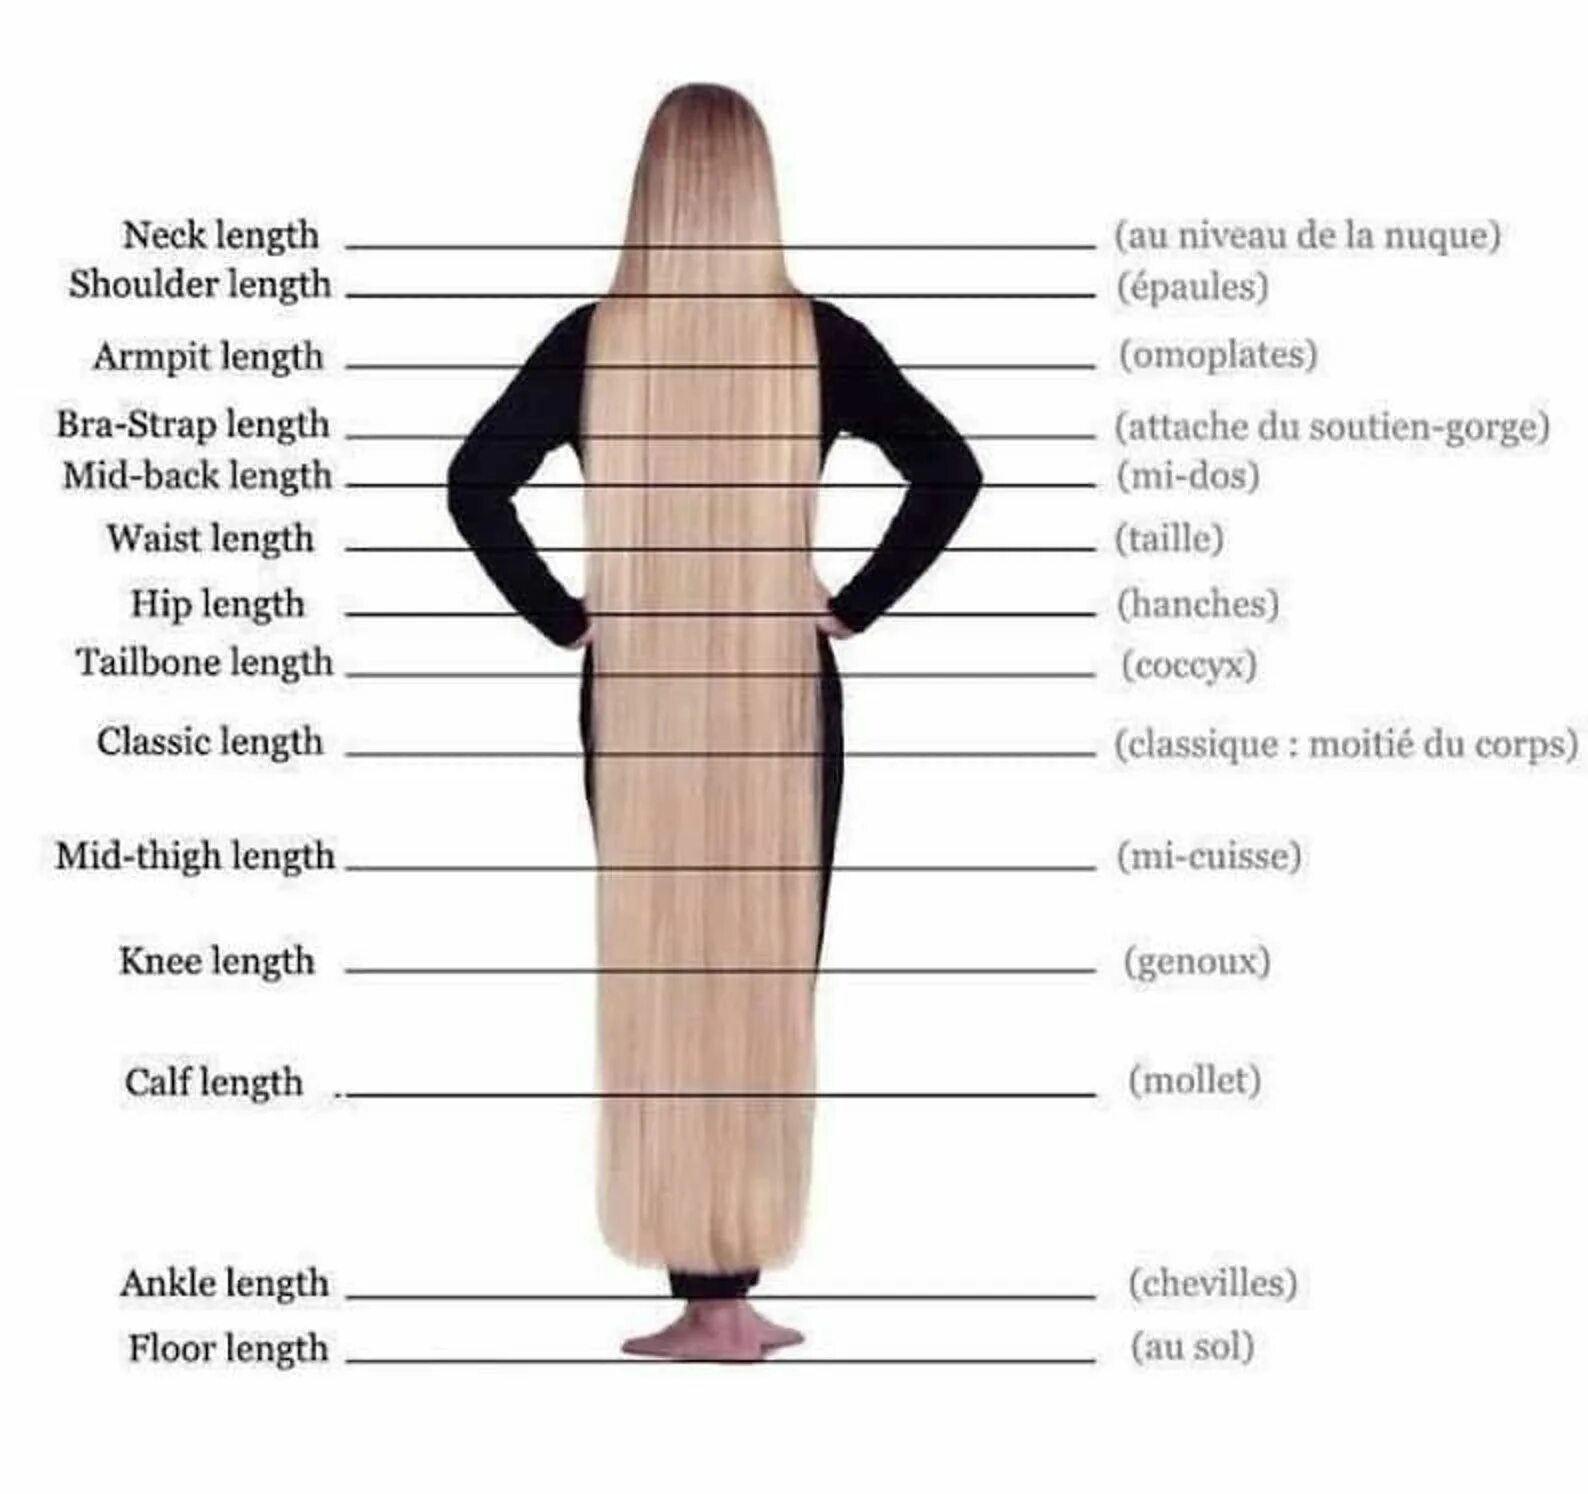 Длина волос в см таблица по длинам. Длина волос по сантиметрам. Длина волос по длине. Мерка длины волос. Волосы длинной 90 см.